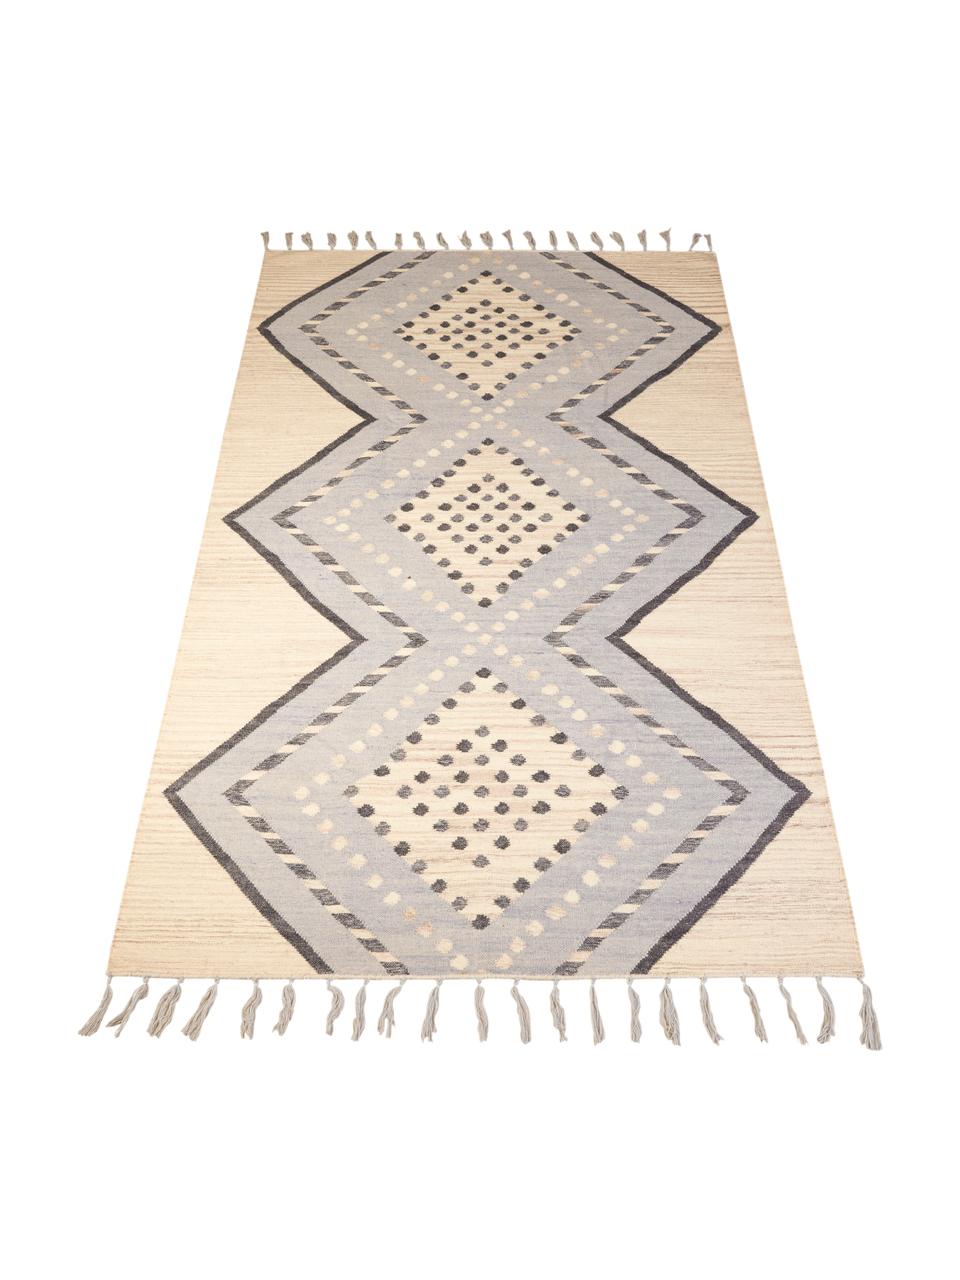 Vzorovaný vlnený koberec so strapcami Jazmin, Béžová, sivomodrá, tmavosivá